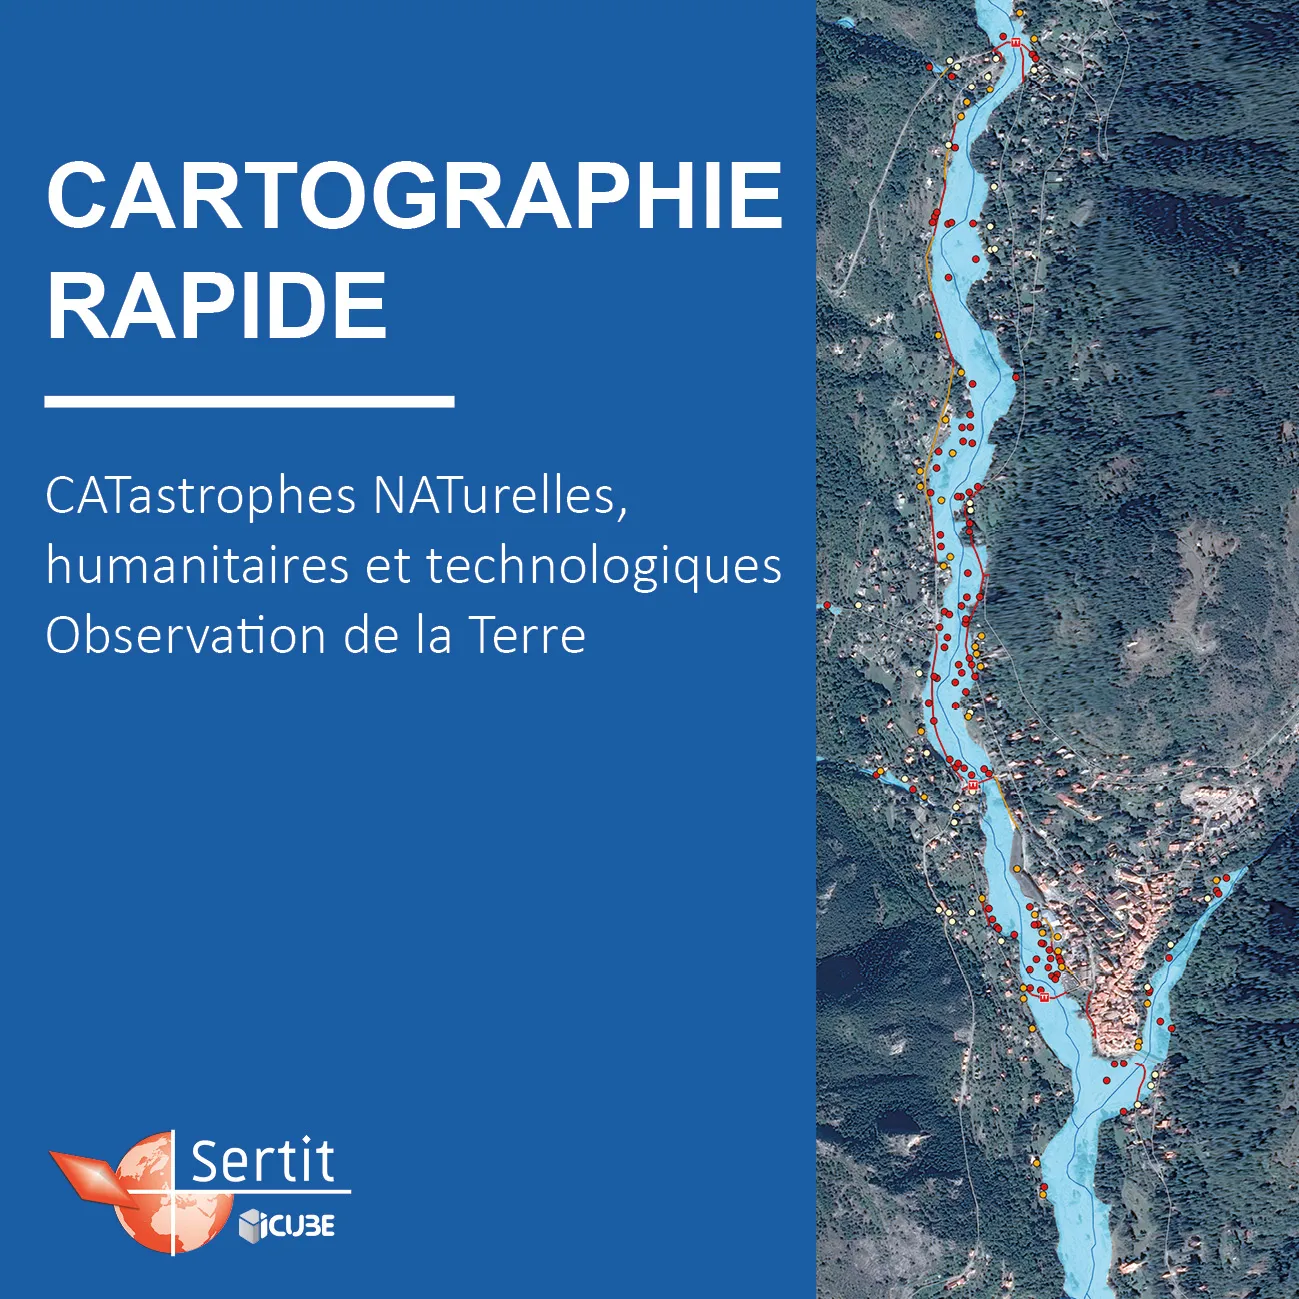 Cartographie Rapide: Catastrophes Naturelles humanitaires et technologiques, Observation de la Terre